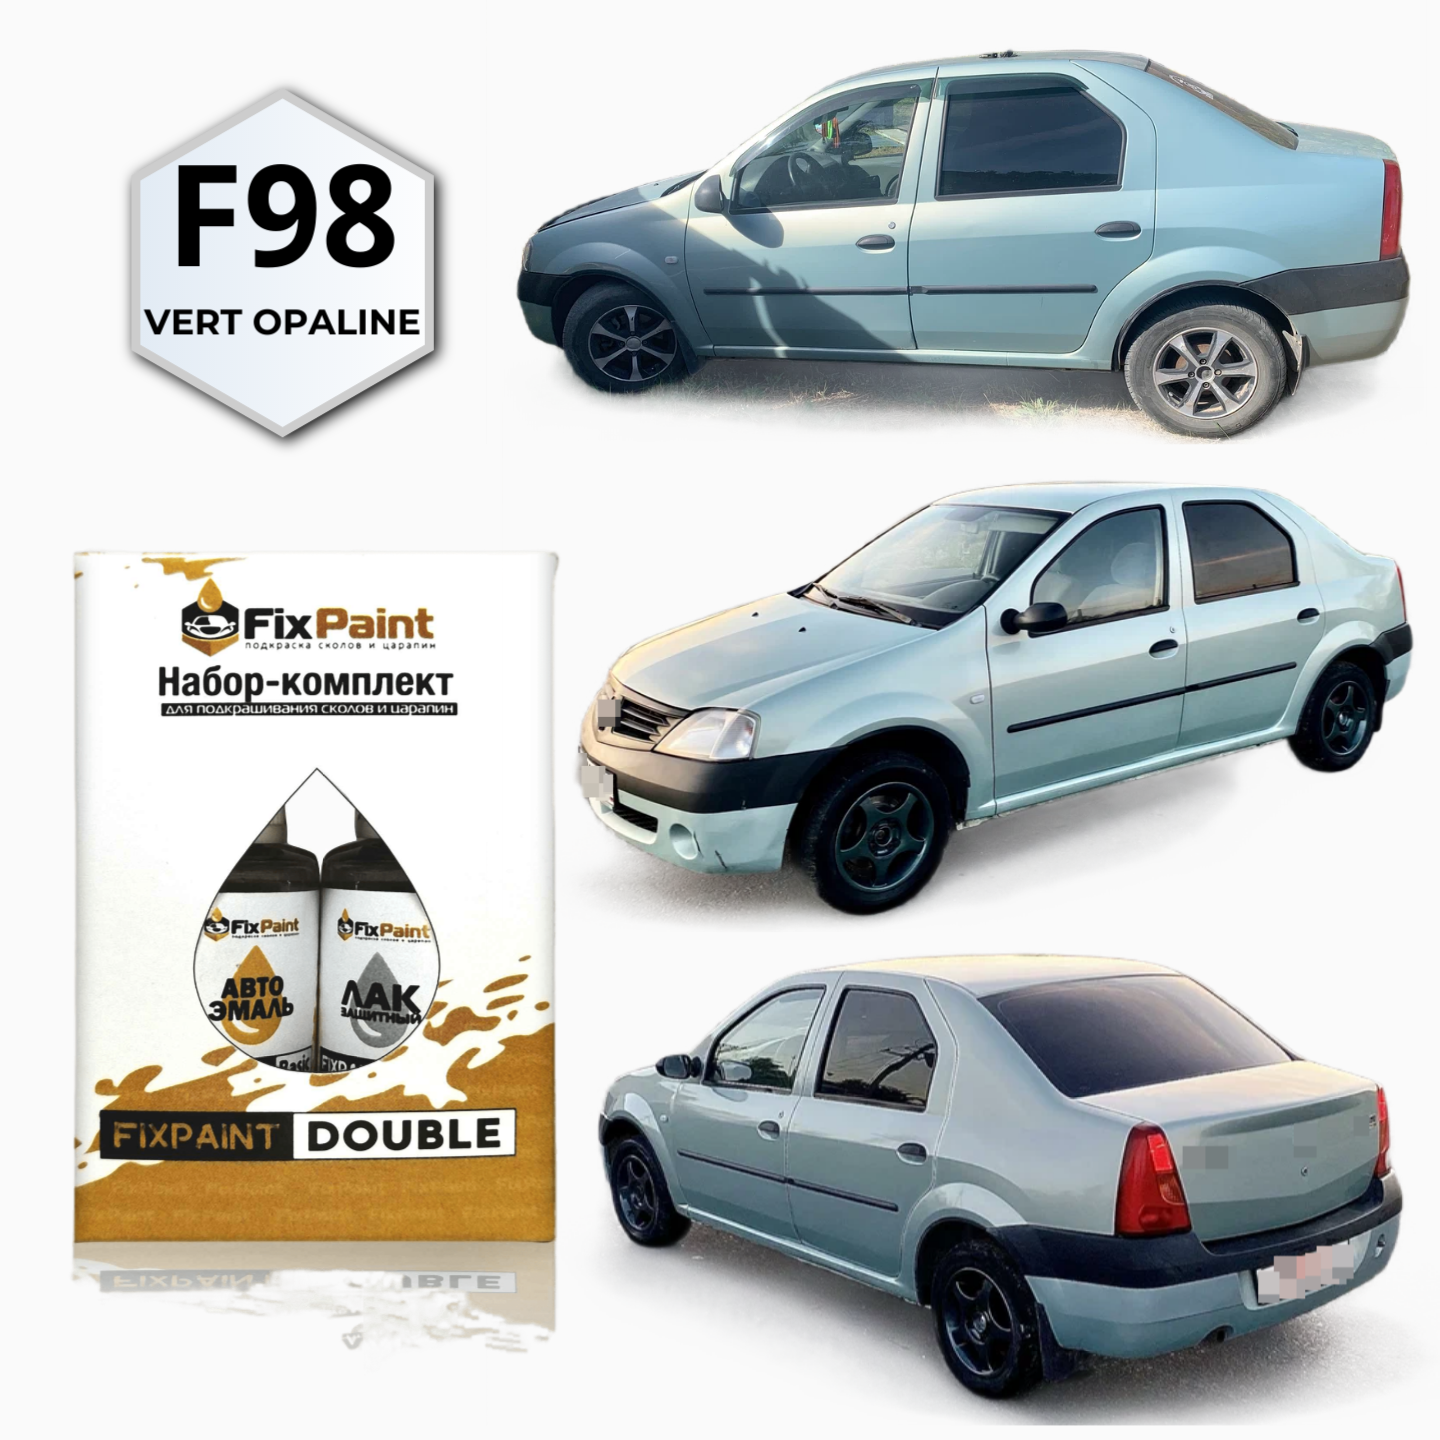 Набор-подкраска FixPaint Double для автомобилей RENAULT LOGAN код краски F98 название цвета VERT OPALINE краска и лак для подкраски сколов и царапи